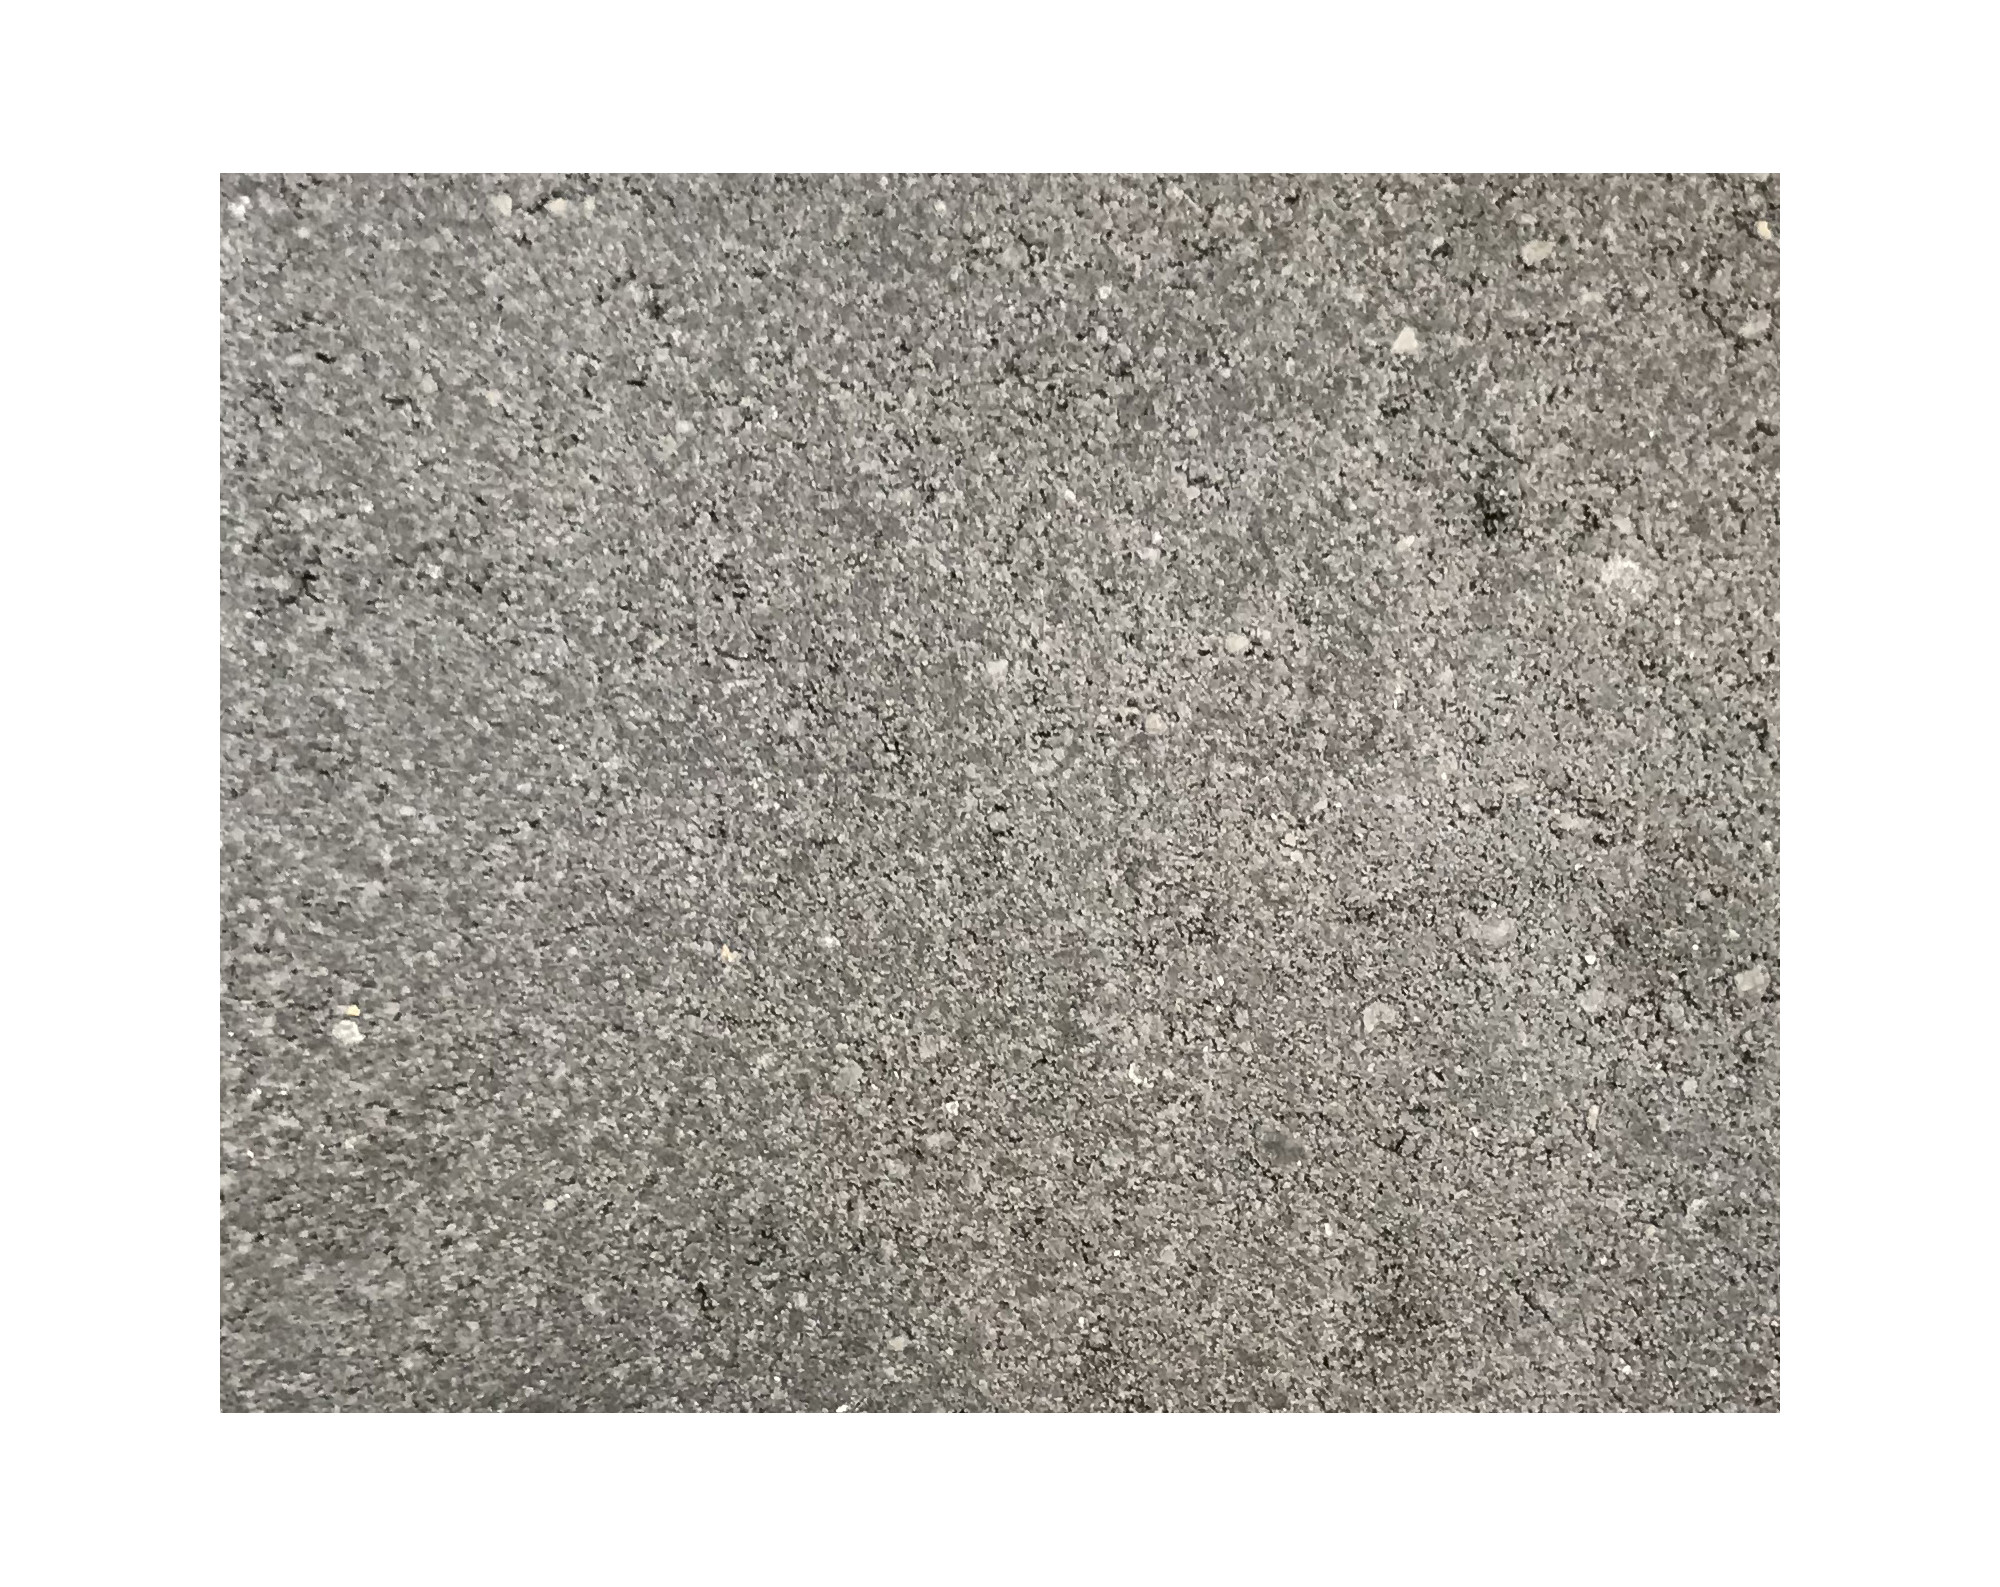 Harmo roc athenset, rustica-serie, ovaal d: 5,00mx10,30, a.zwart , beton